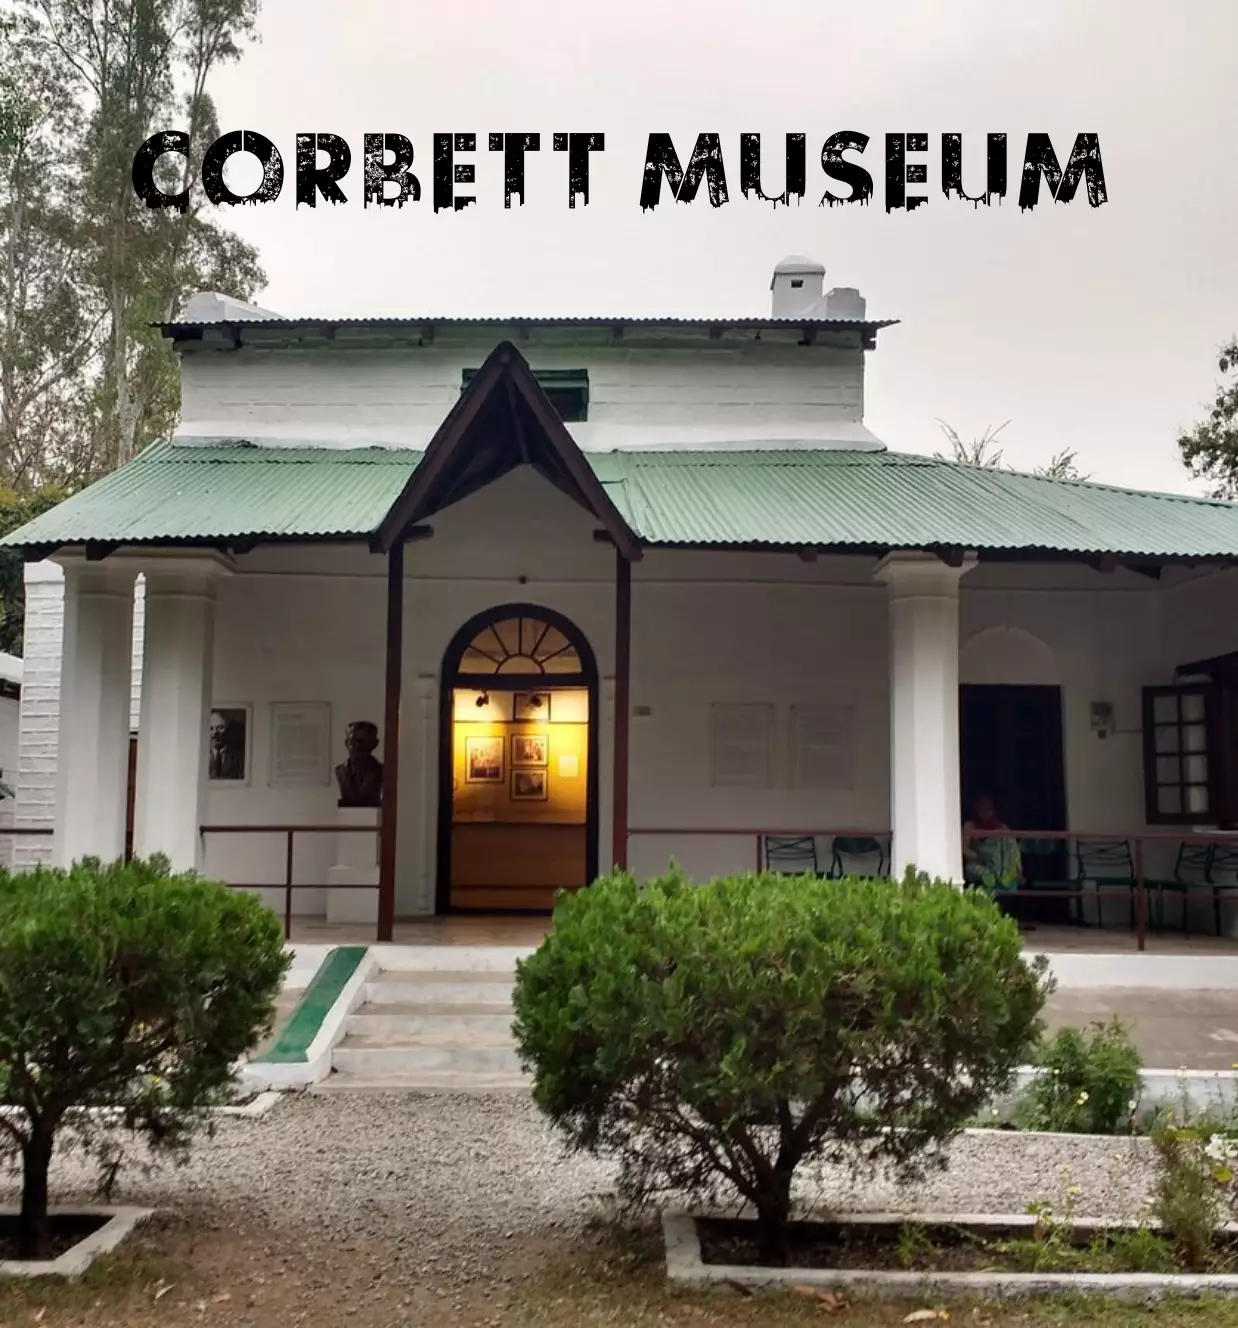 CORBETT MUSEUM